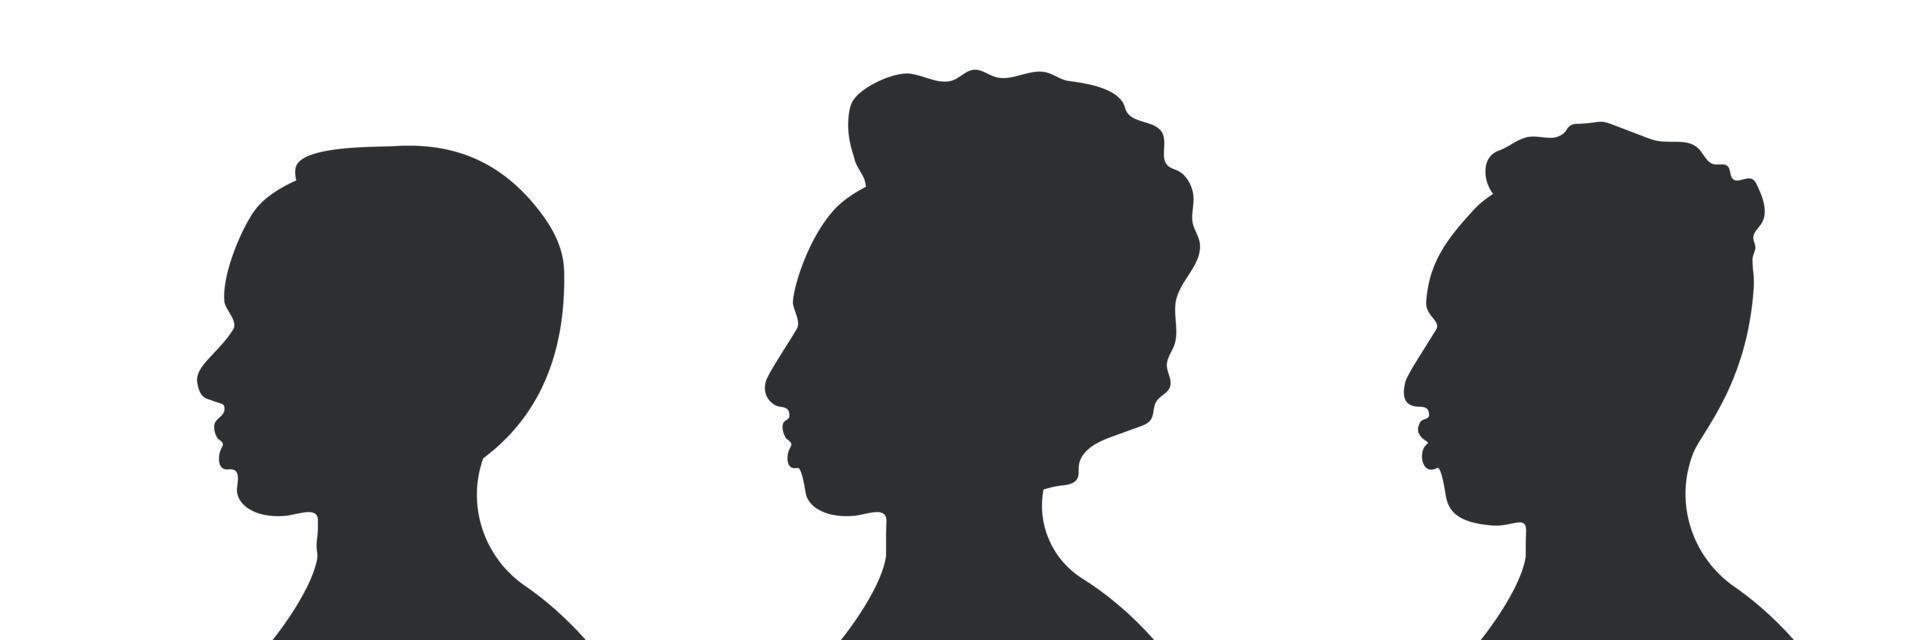 African American men set. Human Silhouette Contour. Male portrait face. Vector illustration